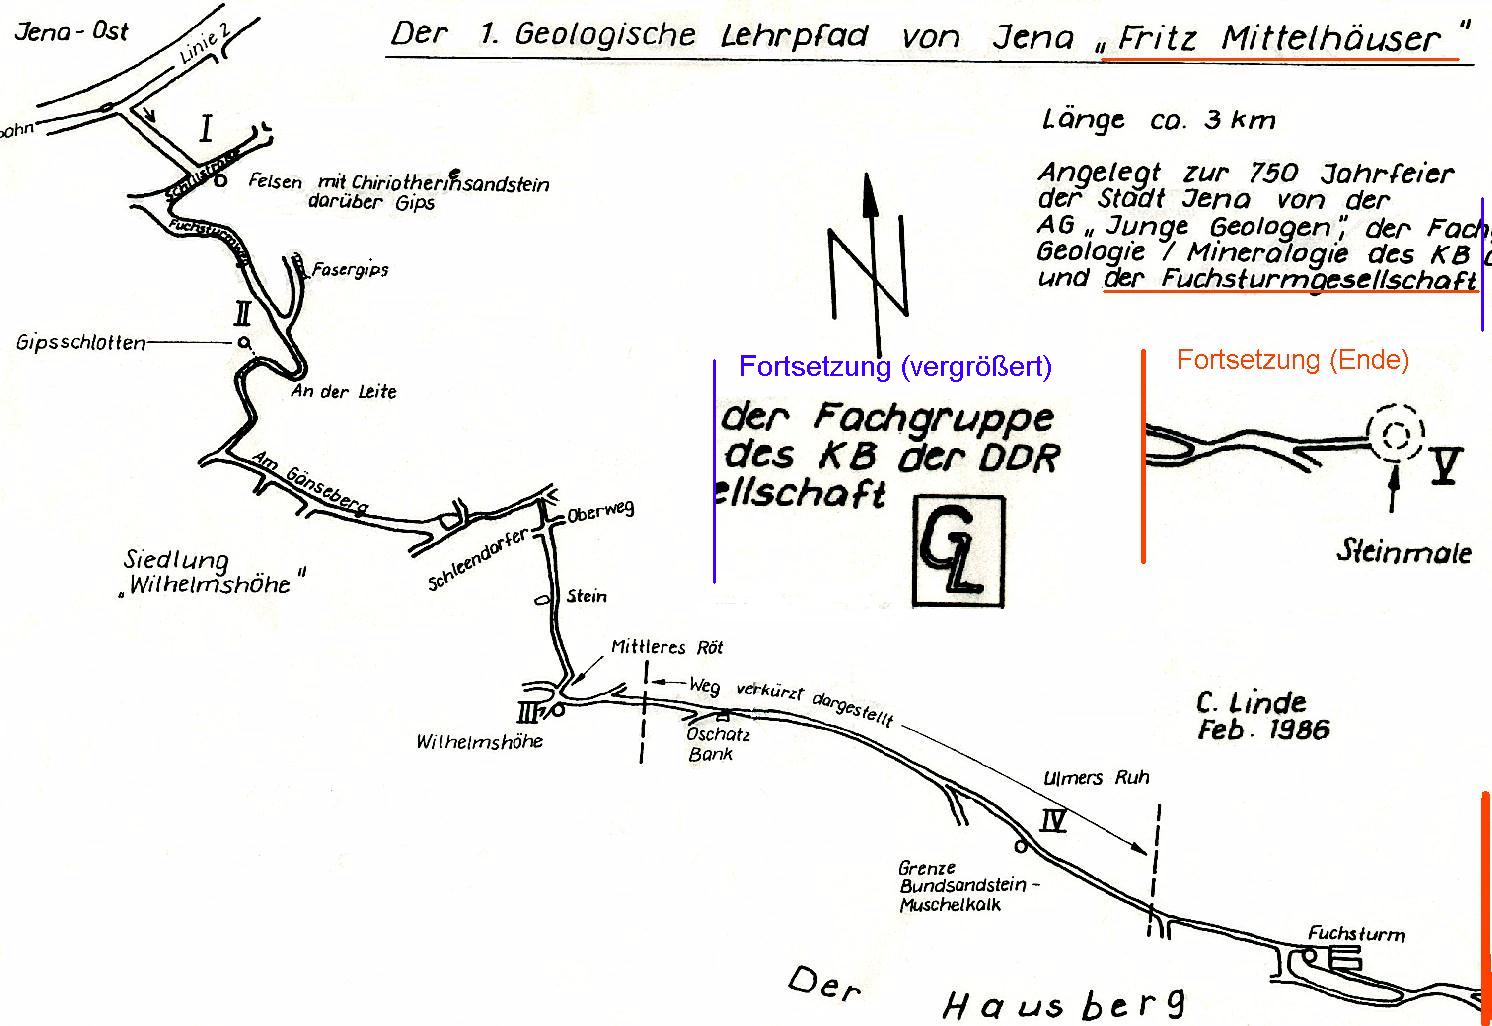 Bild 3 a: So sah der erste Verlaufsplan vom Februar 1986 aus. 